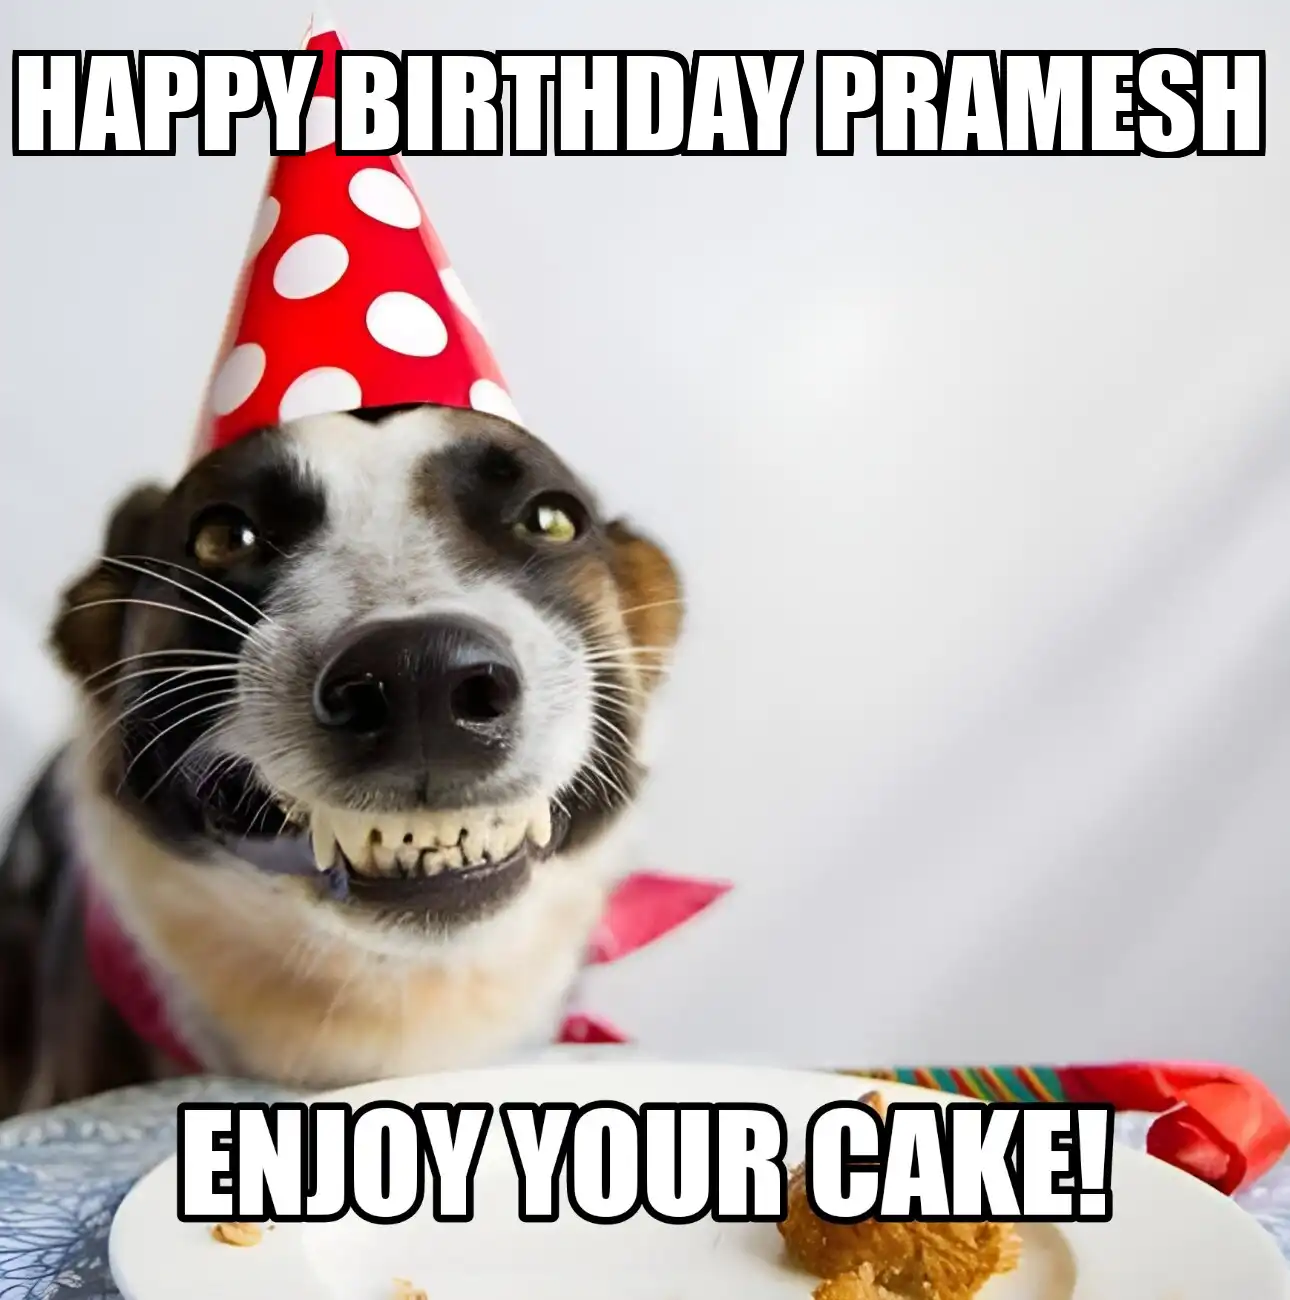 Happy Birthday Pramesh Enjoy Your Cake Dog Meme